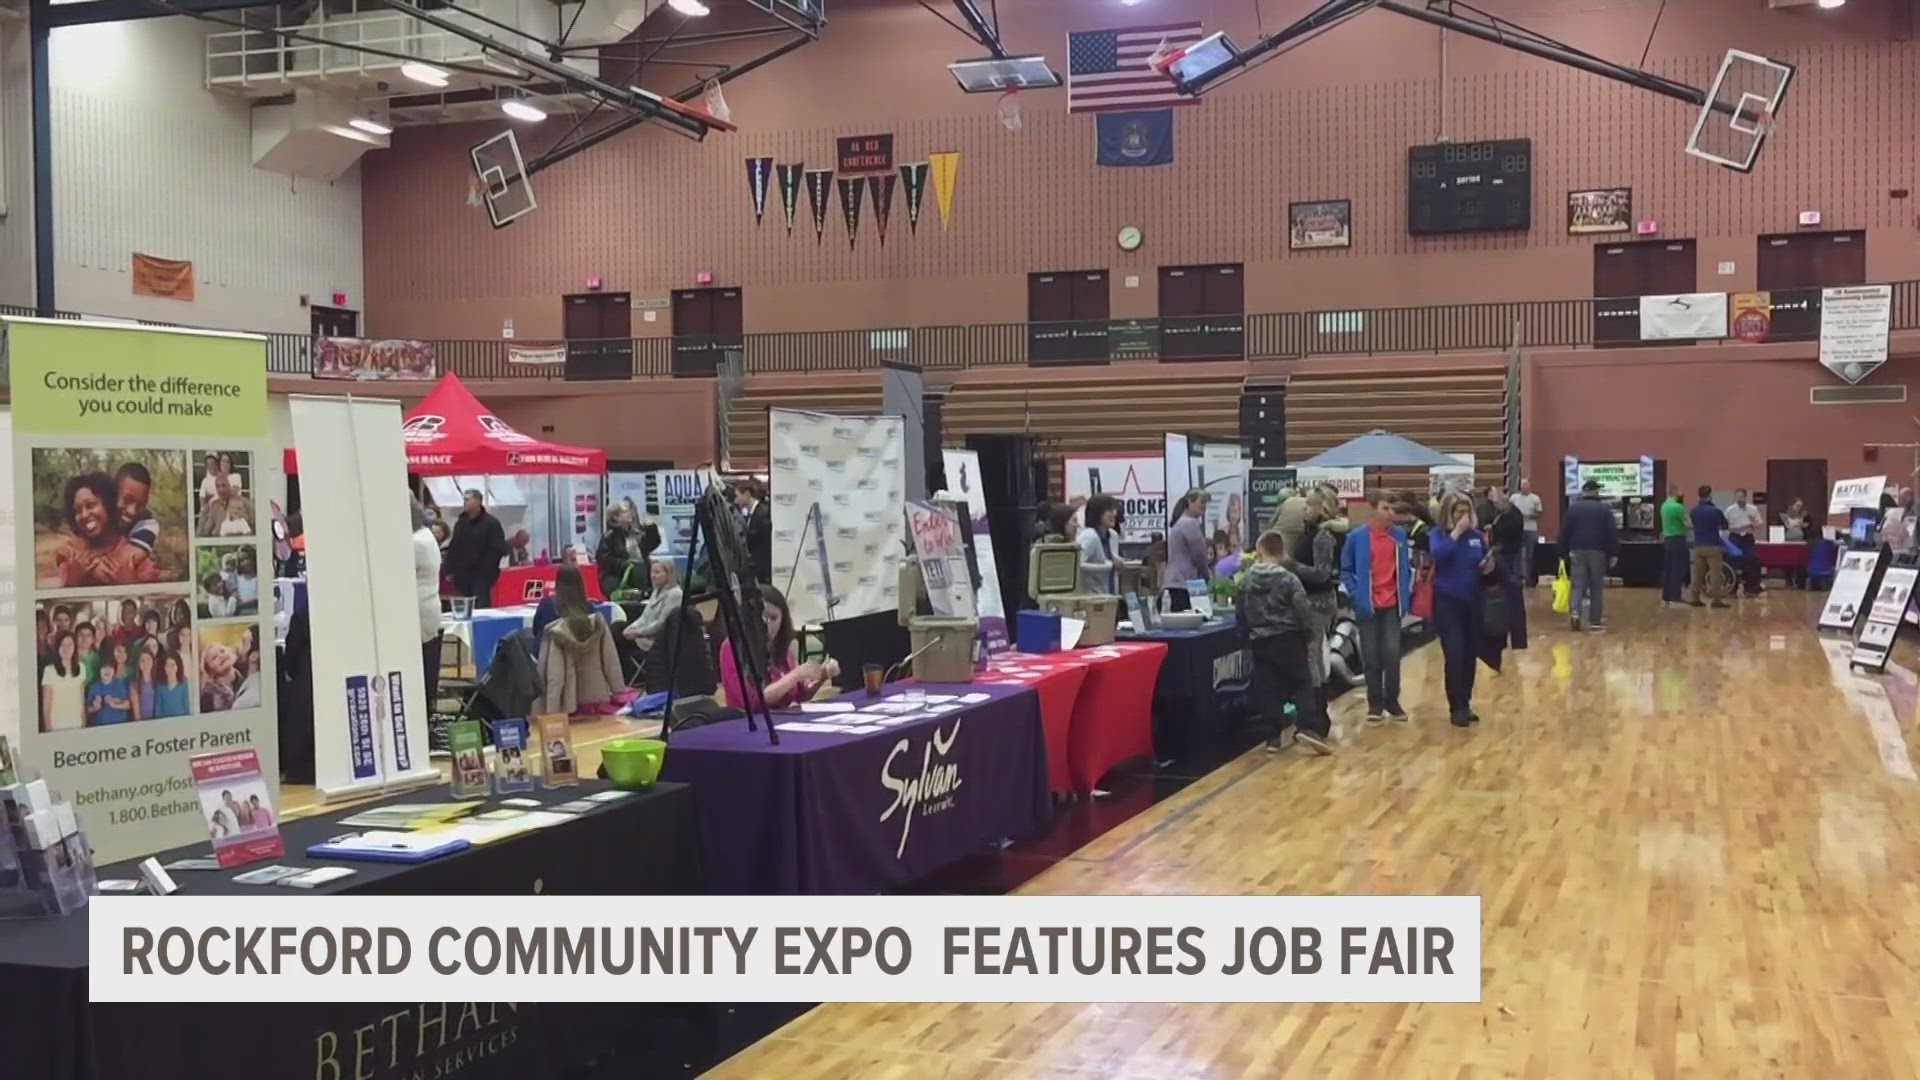 Rockford community expo features job fair